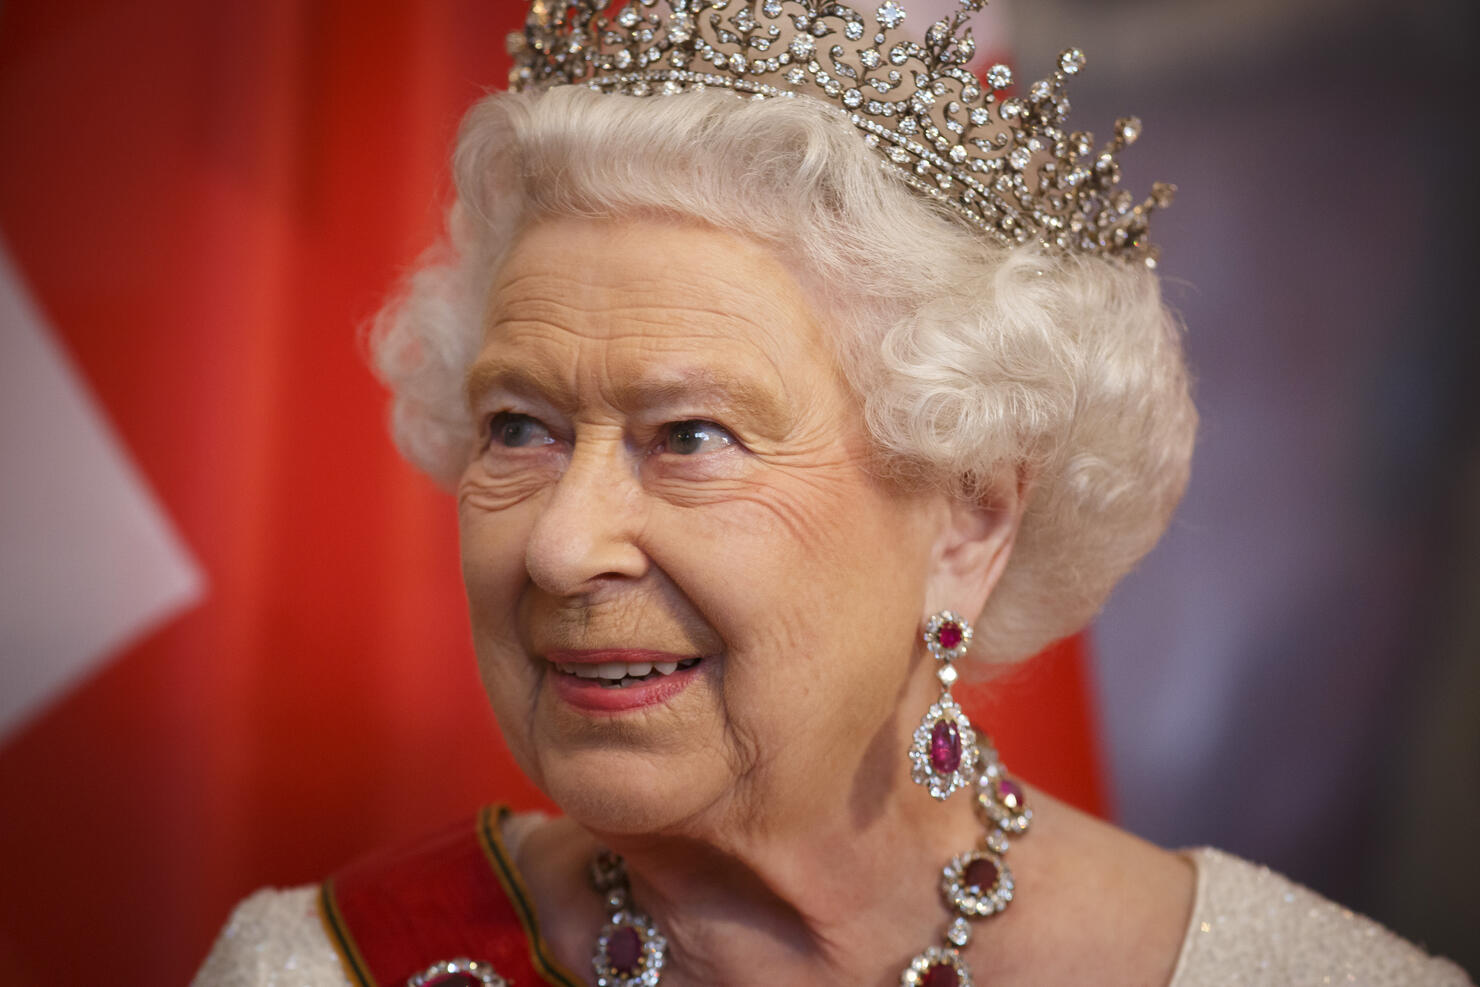 Queen Elizabeth II Visits Germany